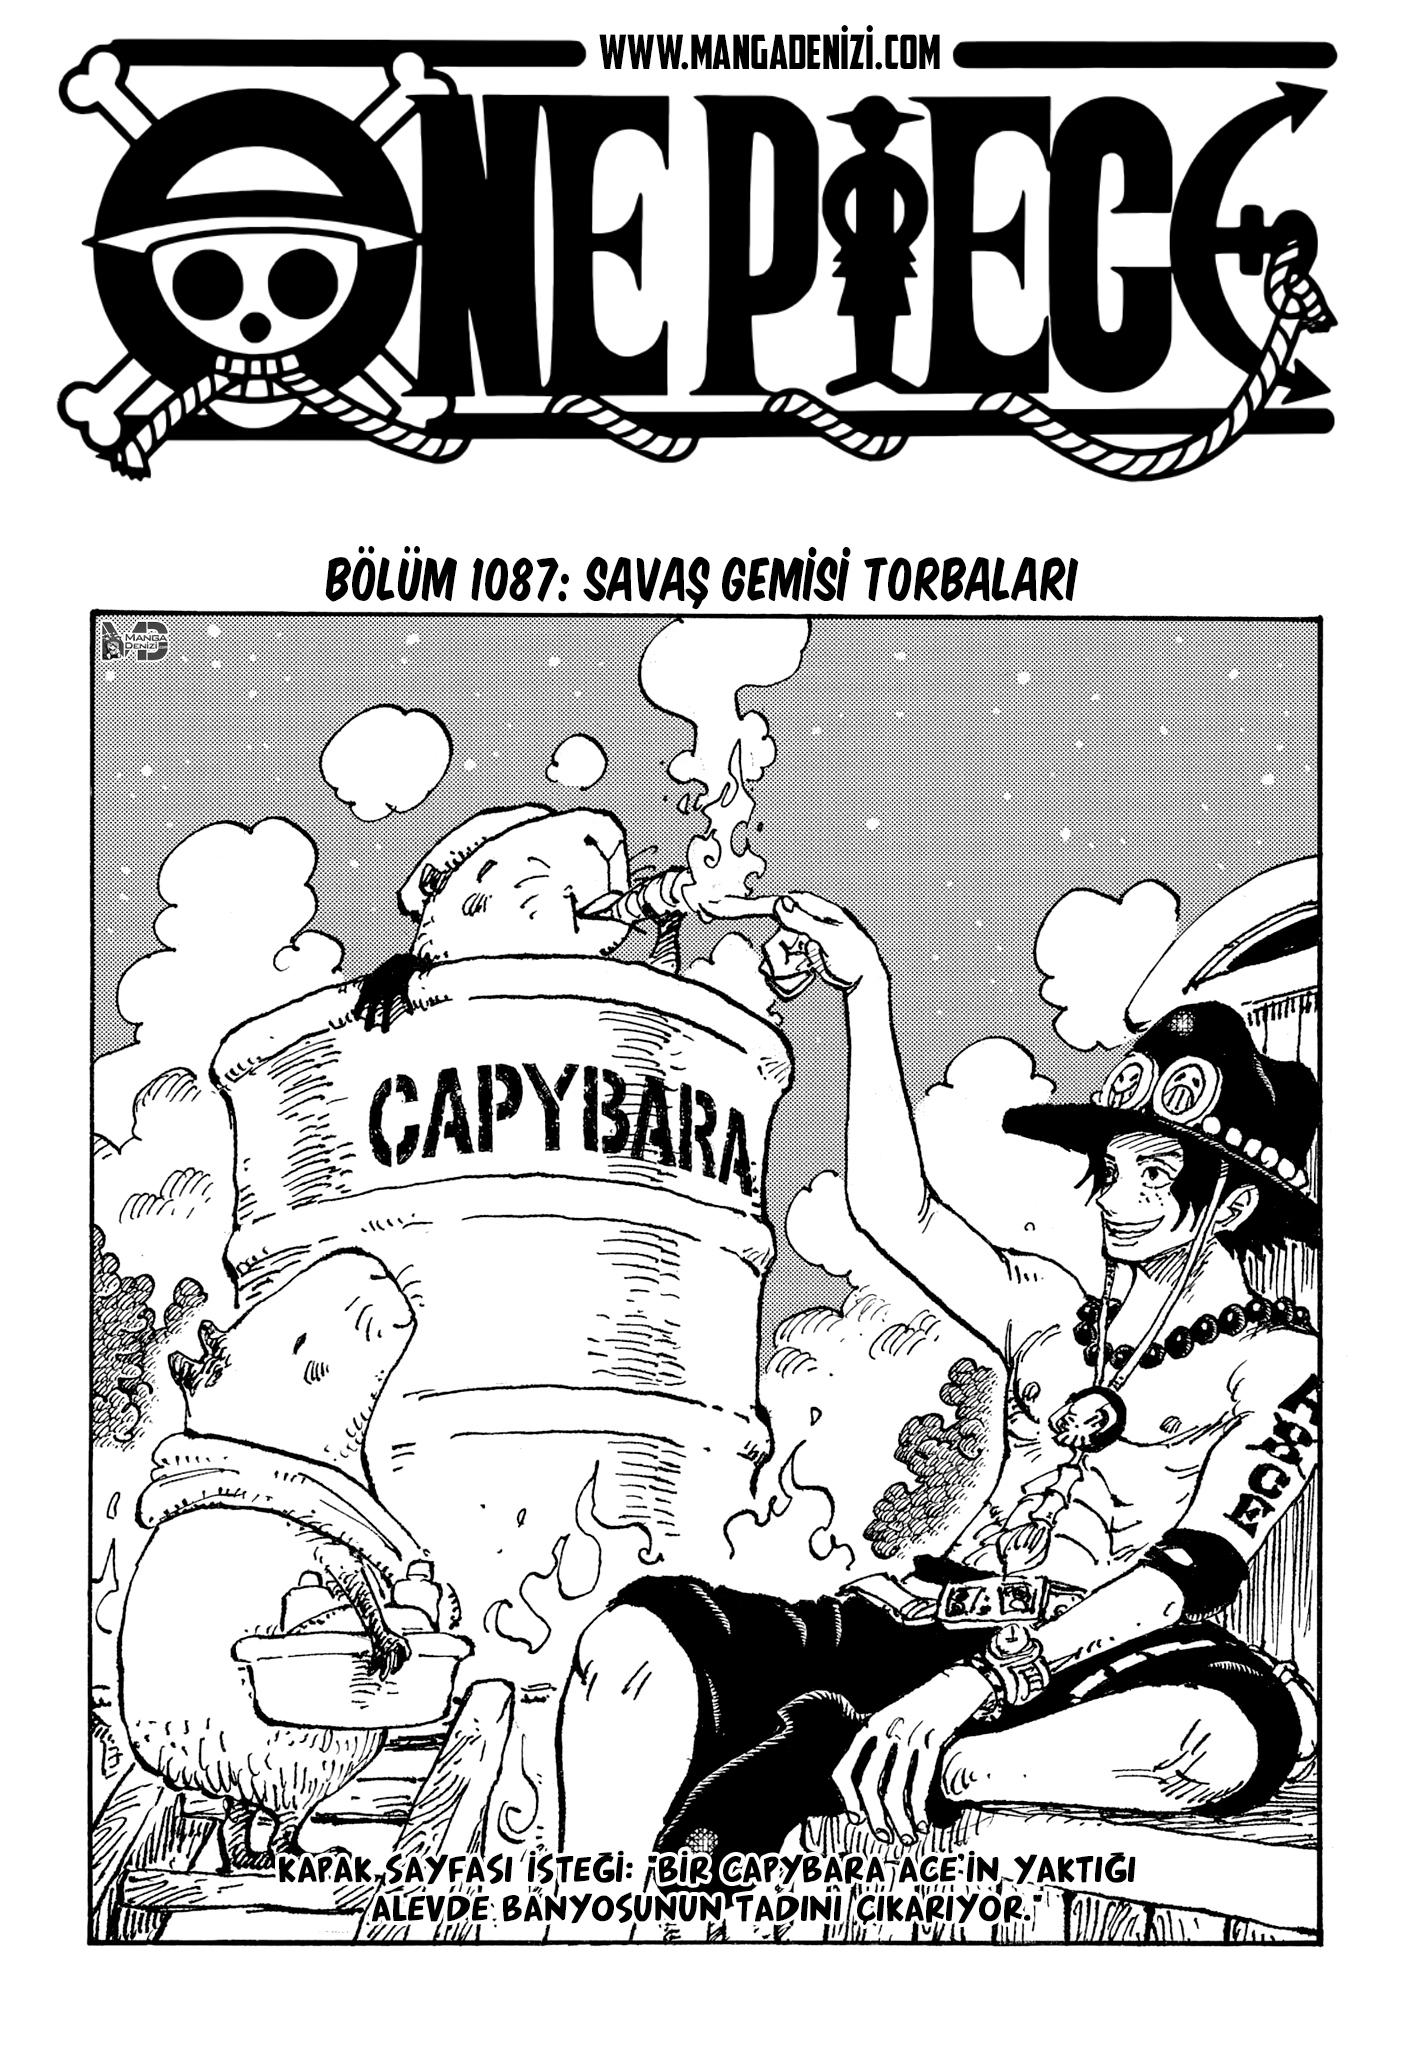 One Piece mangasının 1087 bölümünün 2. sayfasını okuyorsunuz.